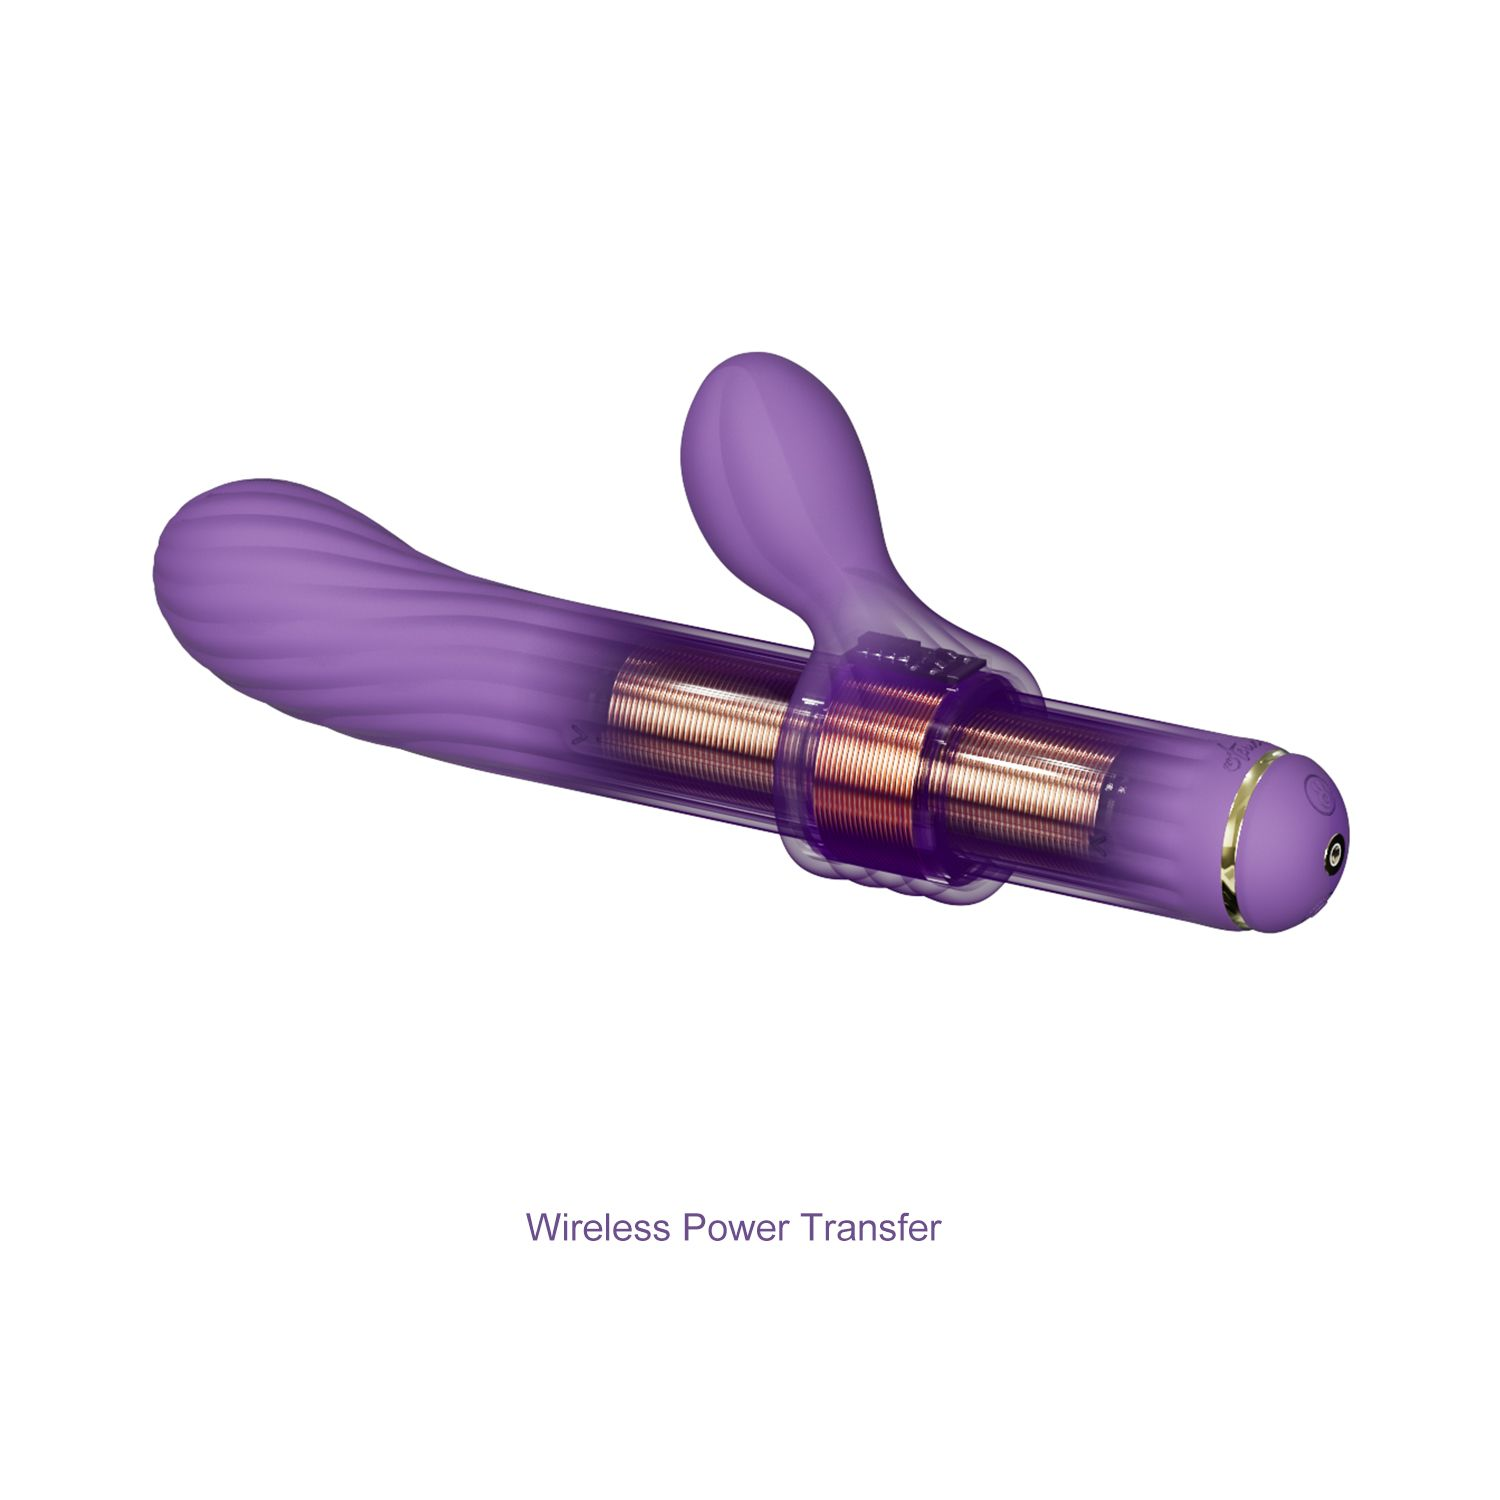 S1 rabbit-vibratoren Stick Magic Lila - OTOUCH